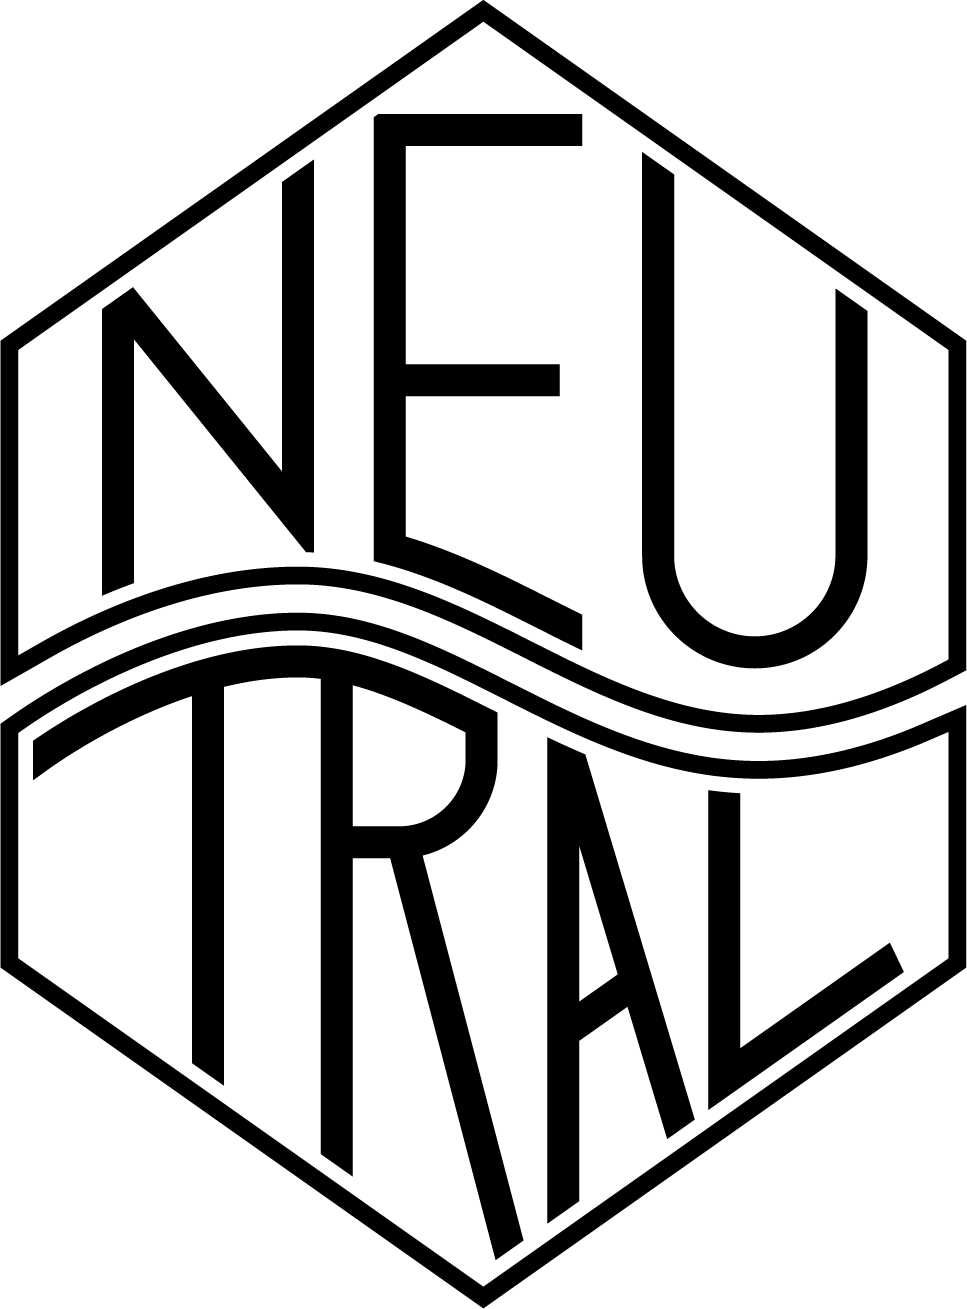 Ryogoku NEUTRAL event logo